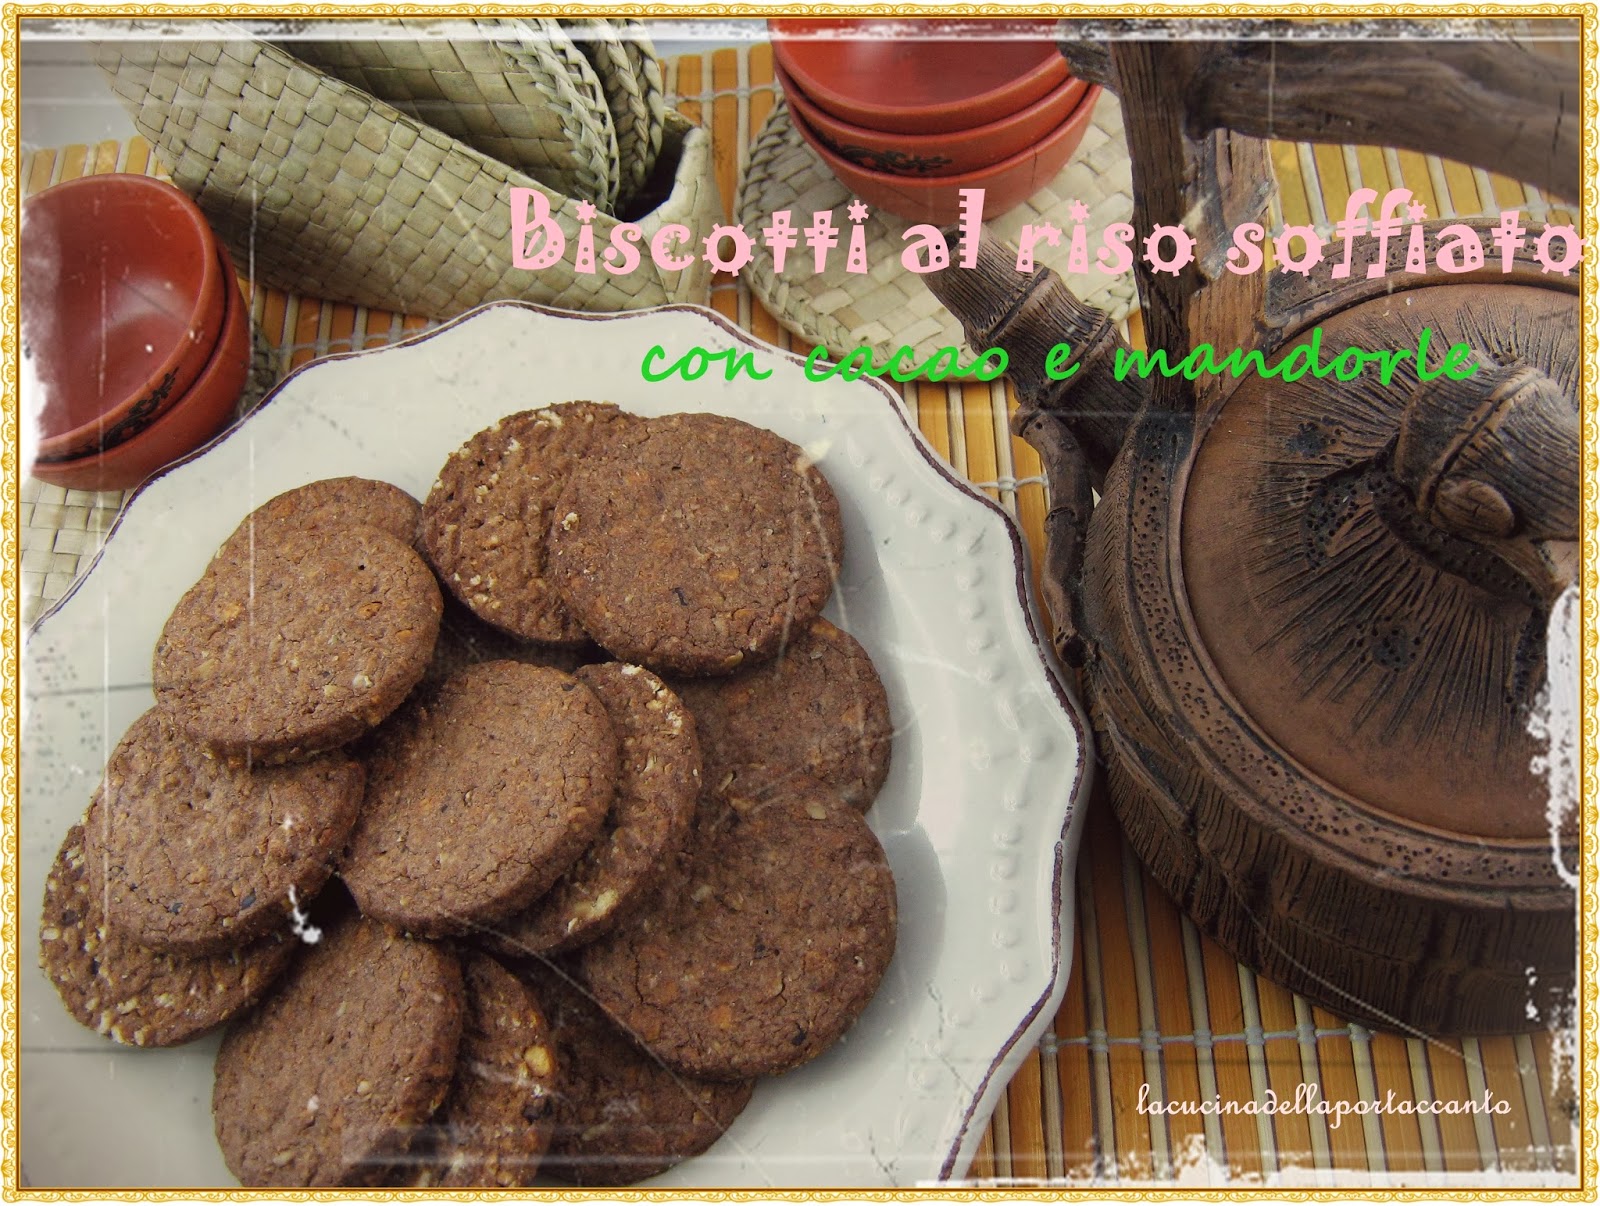 biscotti integrali al riso soffiato con cacao e mandorle 